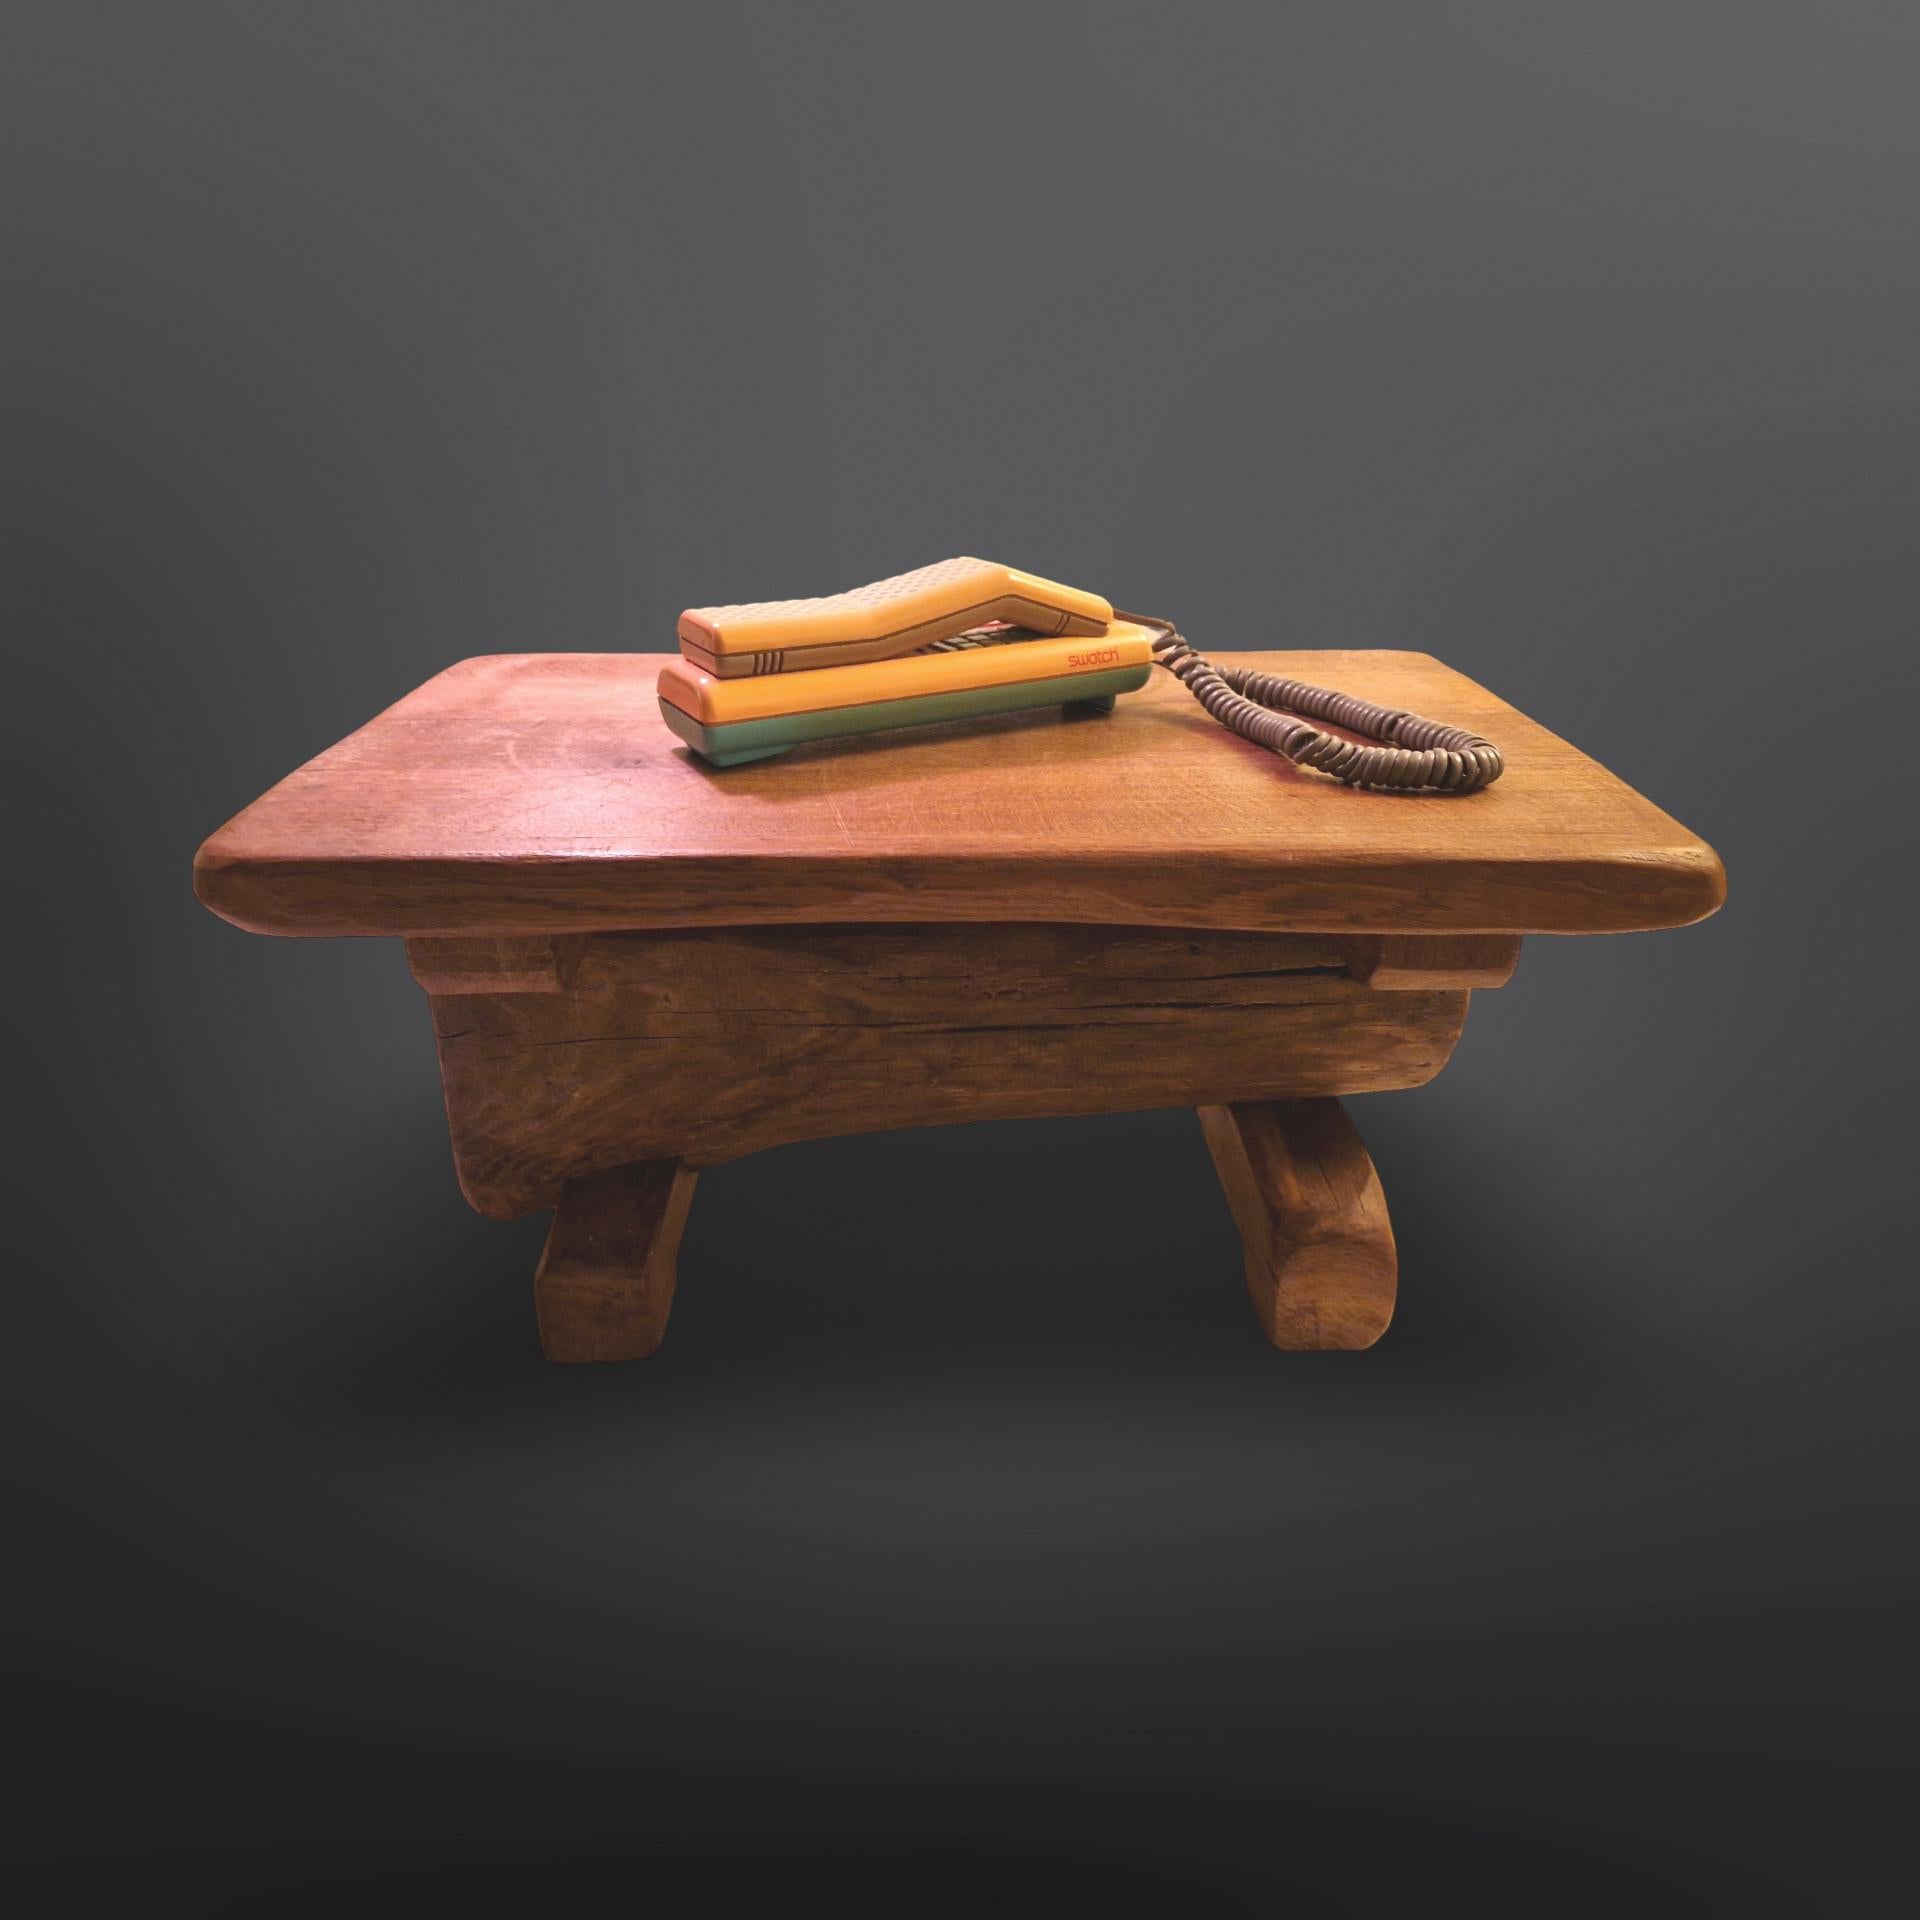 Table d'appoint de style wabi sabi. Il a été fabriqué à la main en chêne massif. La base est fabriquée à partir d'une bûche de chêne posée sur deux pieds fabriqués à la main. Un objet unique et naturel qui trouvera sa place dans pratiquement tous